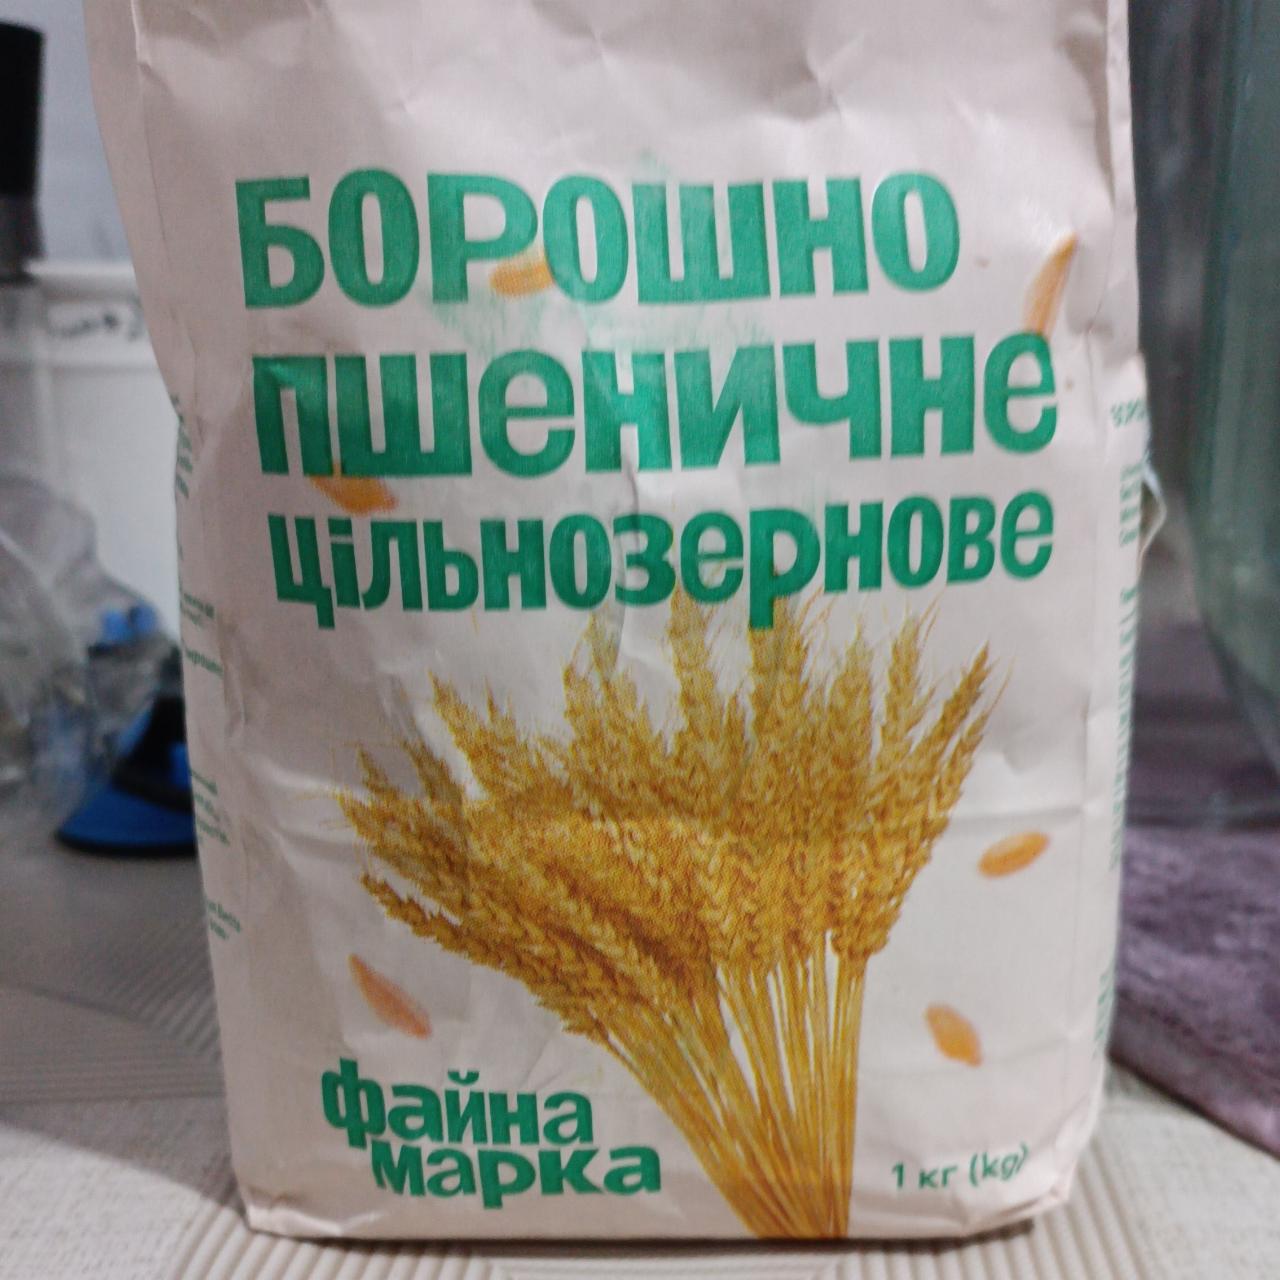 Фото - Борошно пшеничне цільнозернове Файна марка